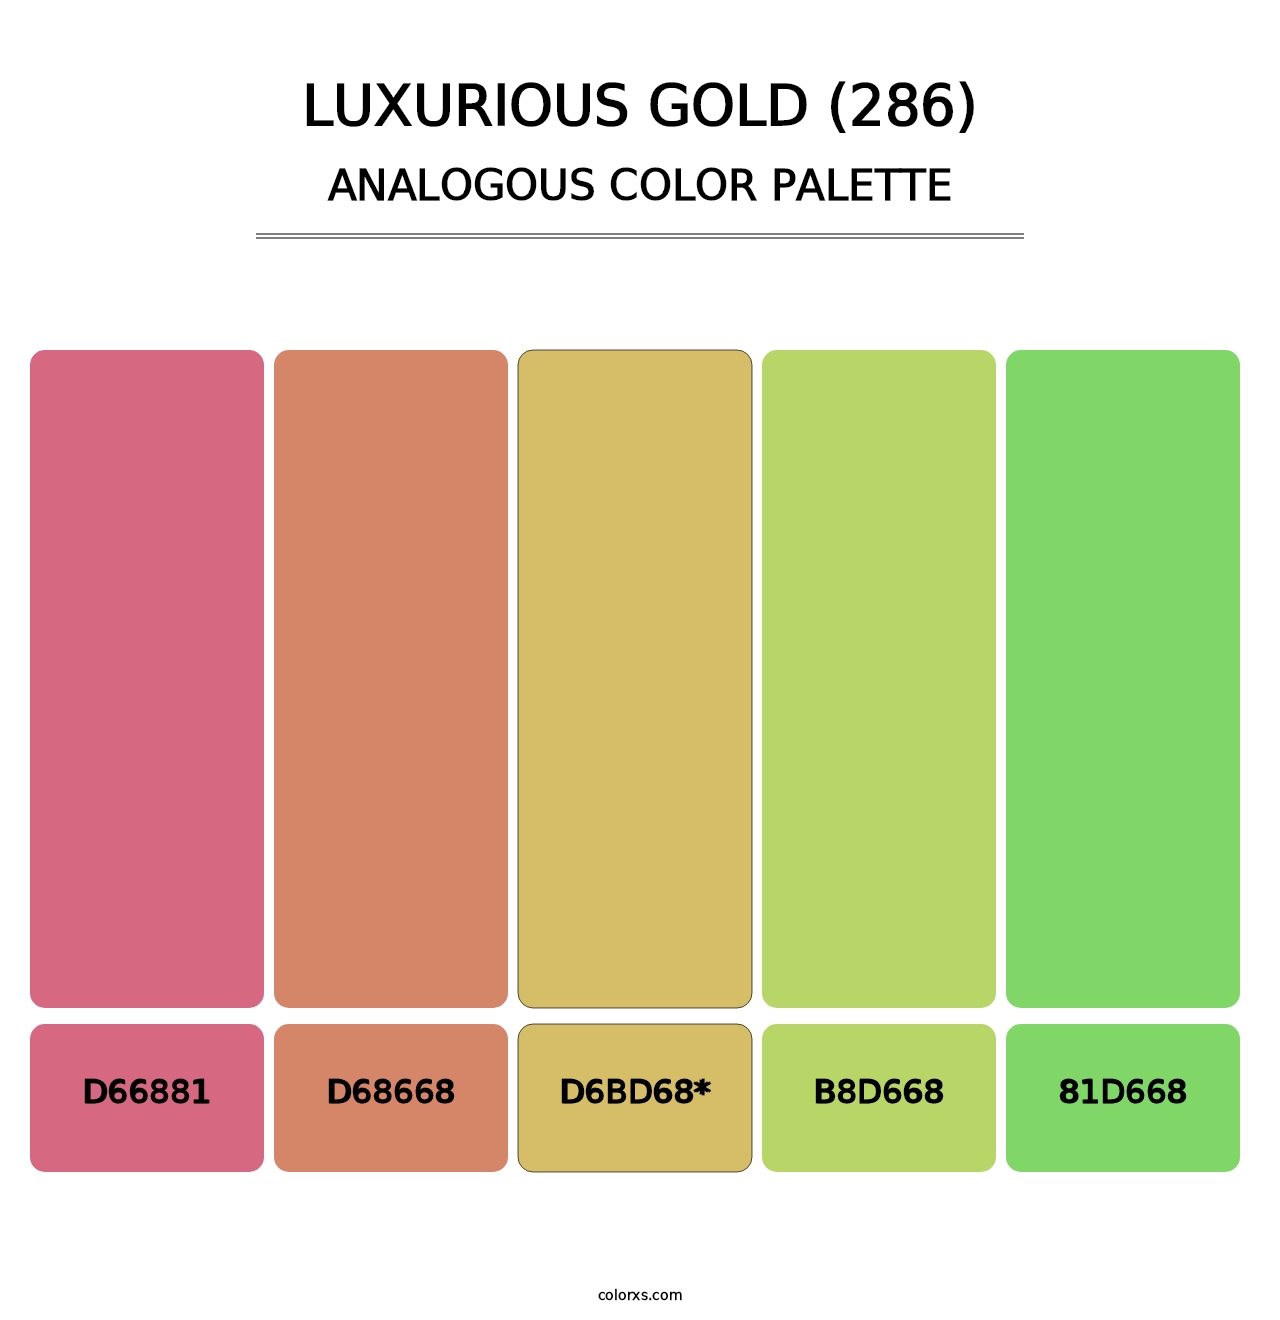 Luxurious Gold (286) - Analogous Color Palette